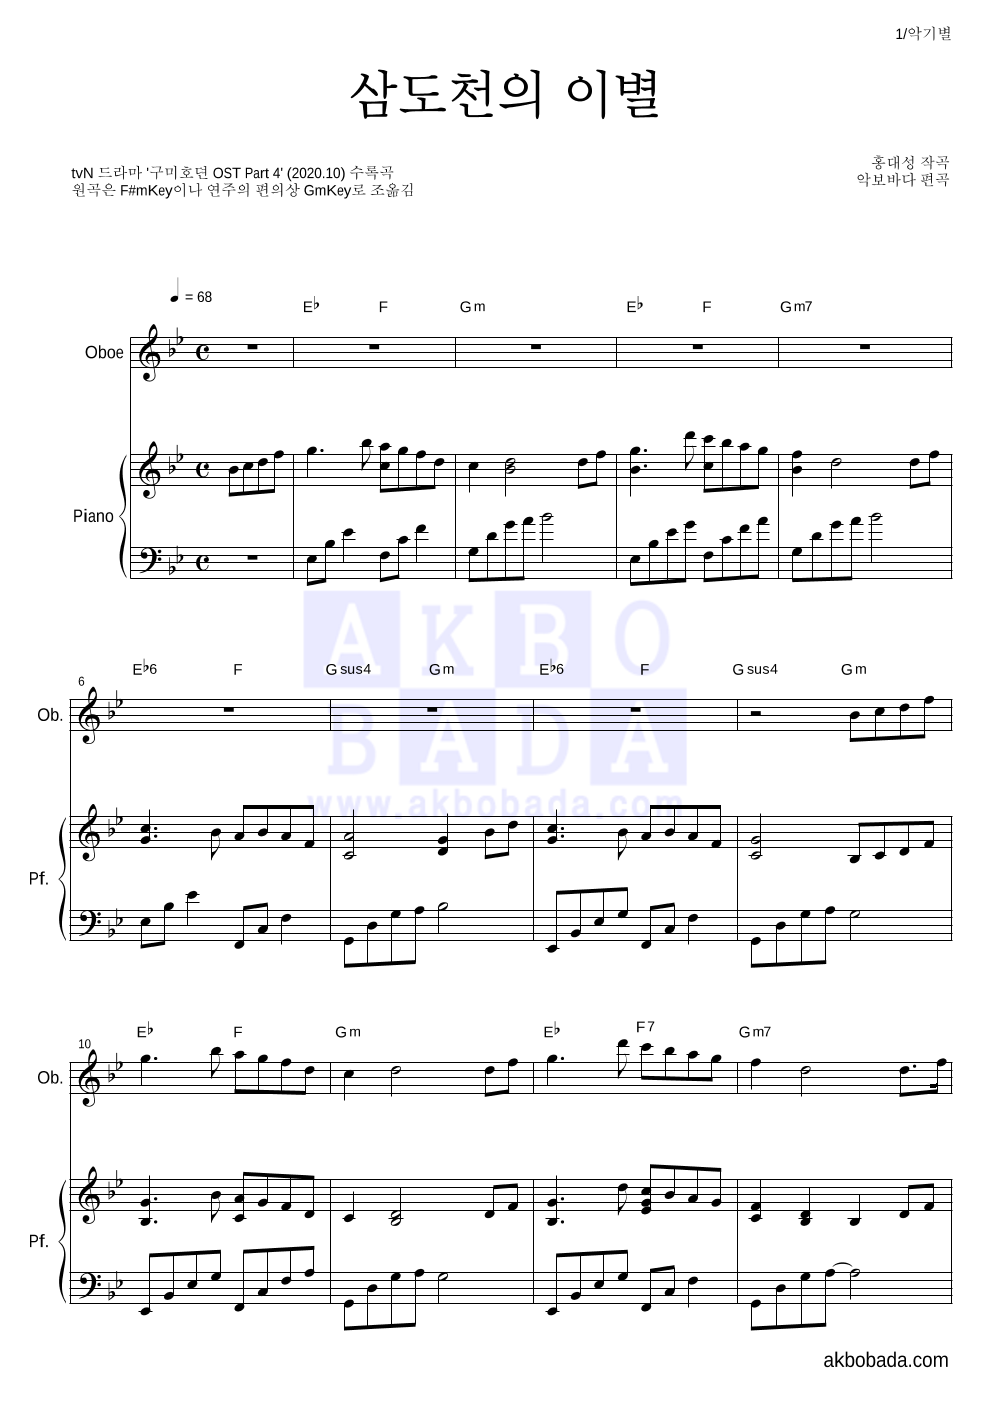 구미호뎐OST - 삼도천의 이별(전생장면) 오보에&피아노 악보 